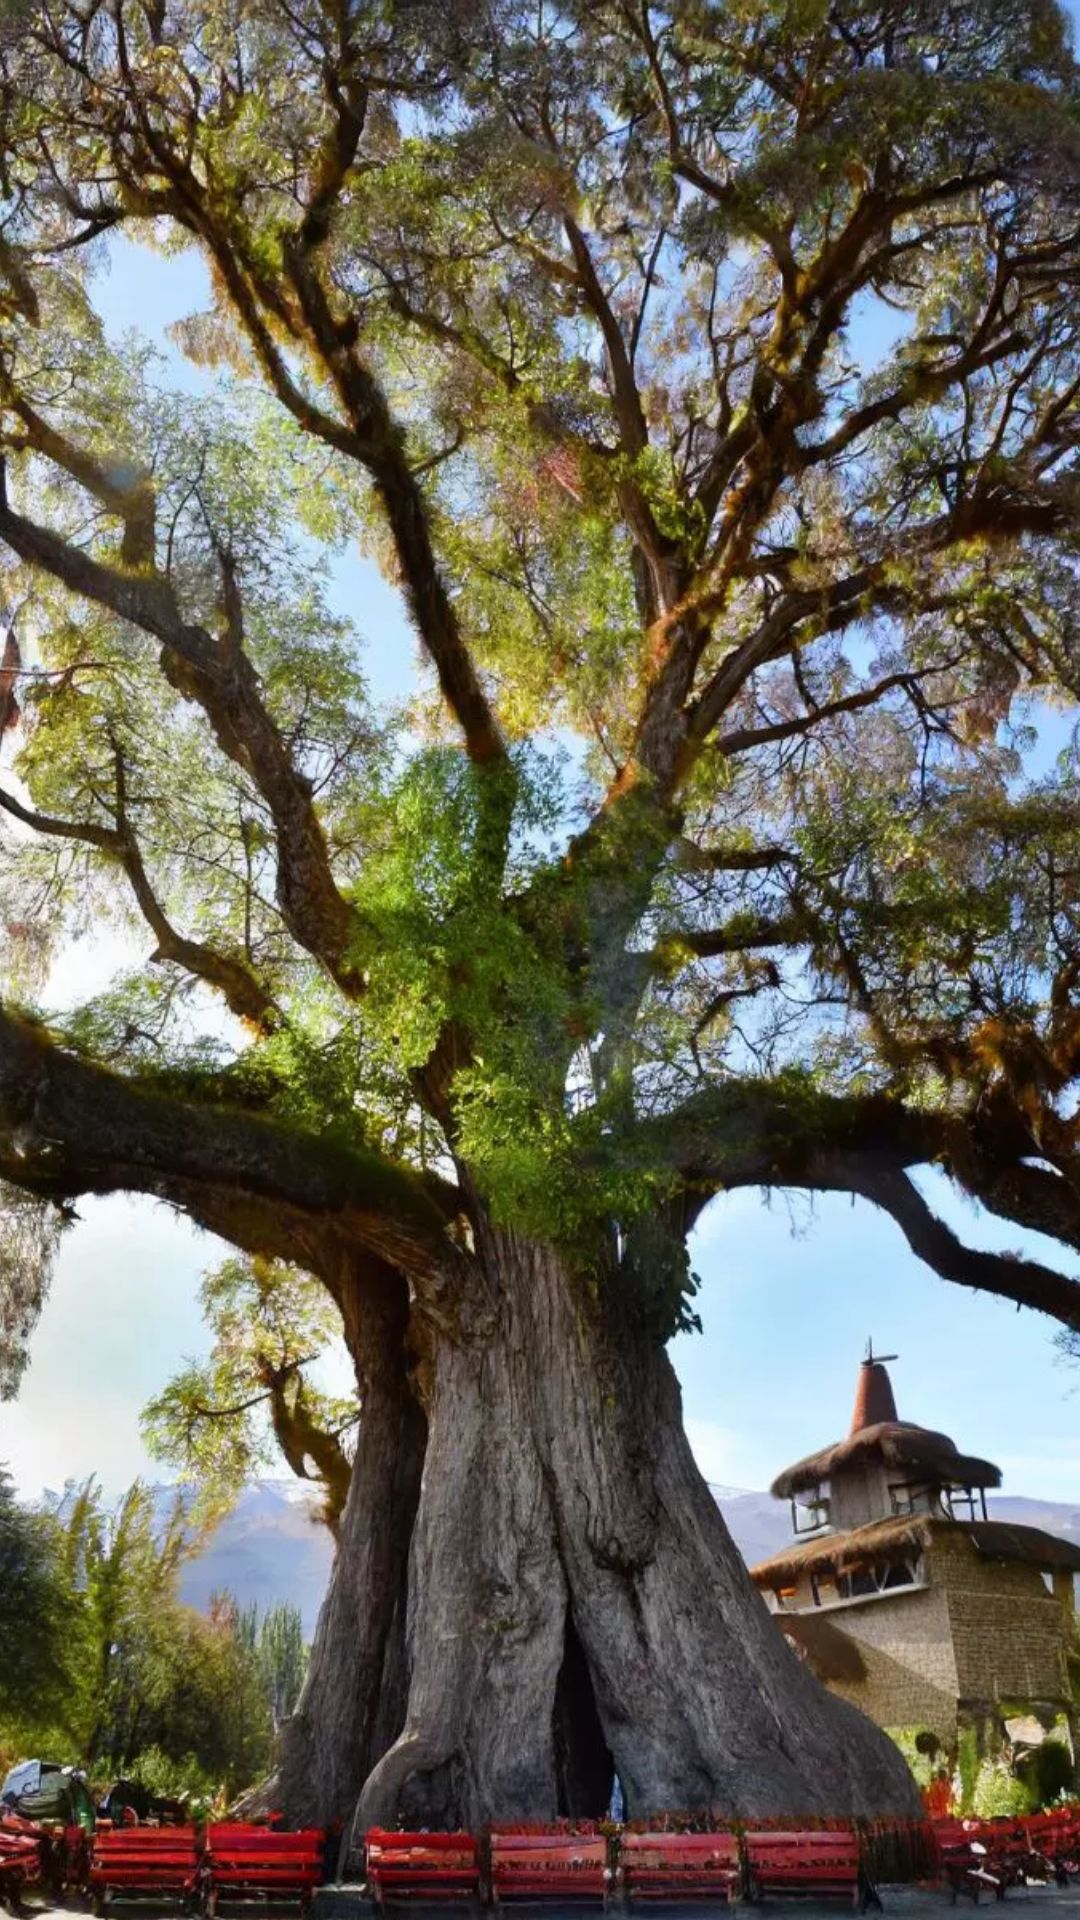 ये है धरती का सबसे पुराना पेड़, यह महाभारत के समय भी था। इसकी उम्र जानकर हैरान हो जाएंगे। 